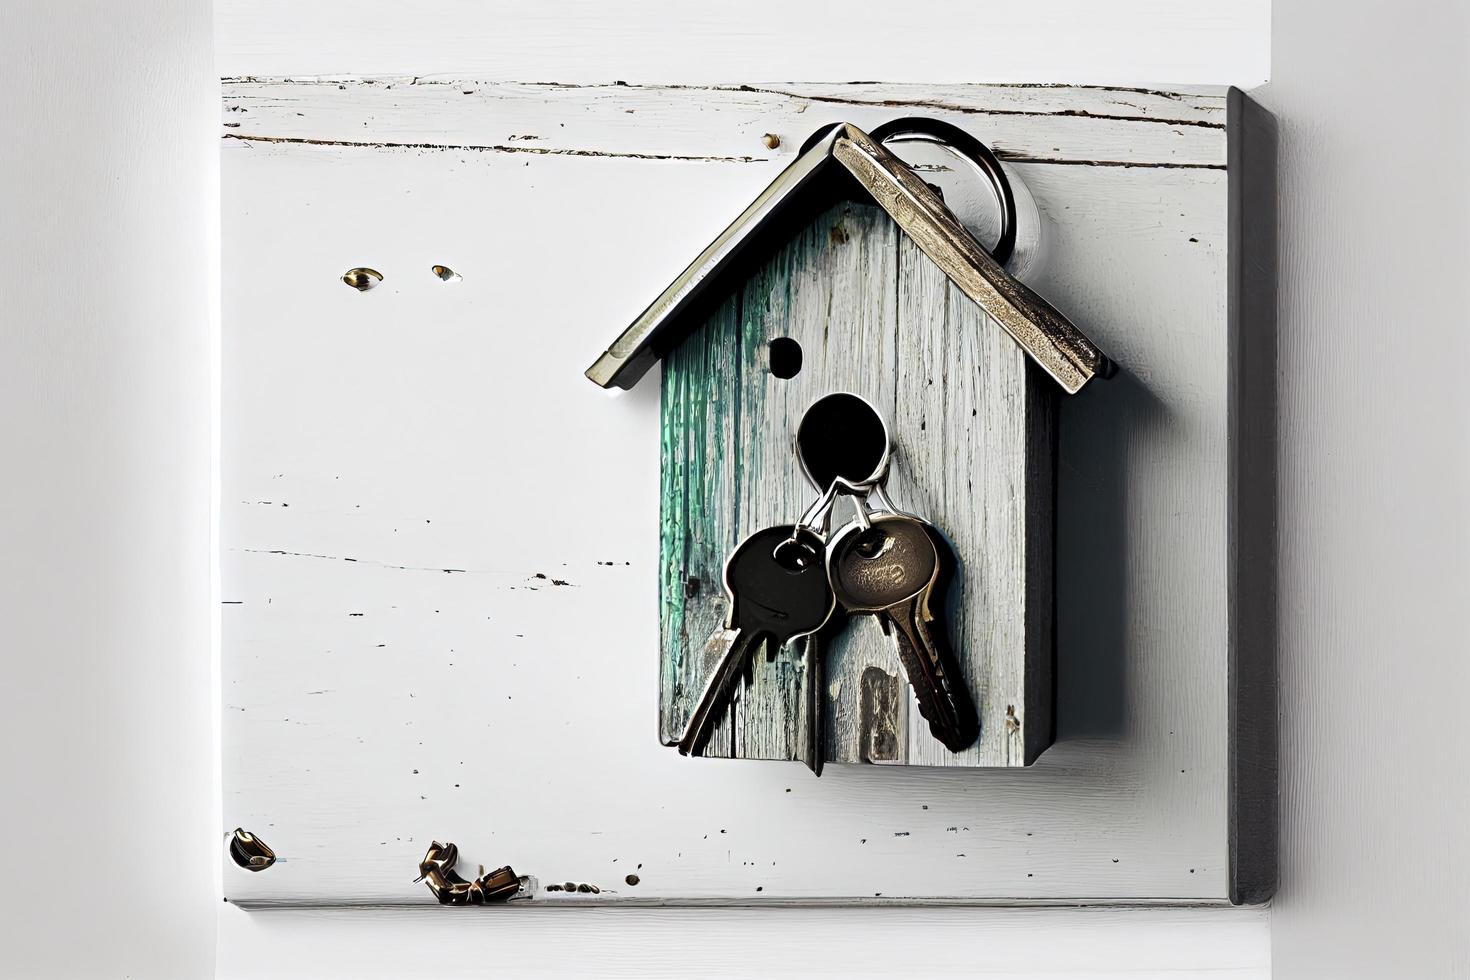 concept immobilier - porte-clés et clés sur fond de bois blanc photo